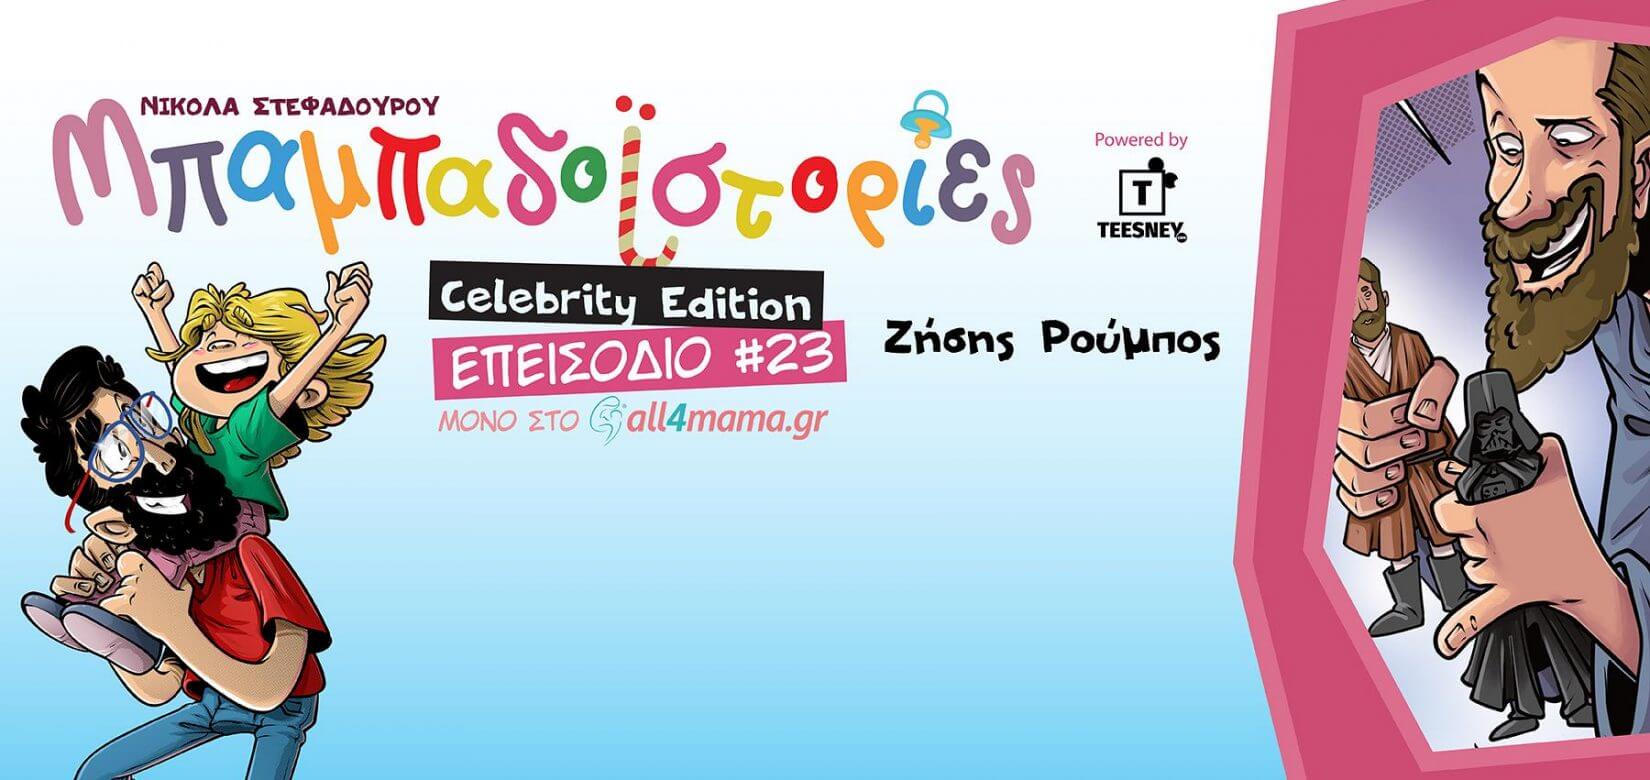 Επεισόδιο #23: Celebrity edition με τον Zήση Ρούμπο